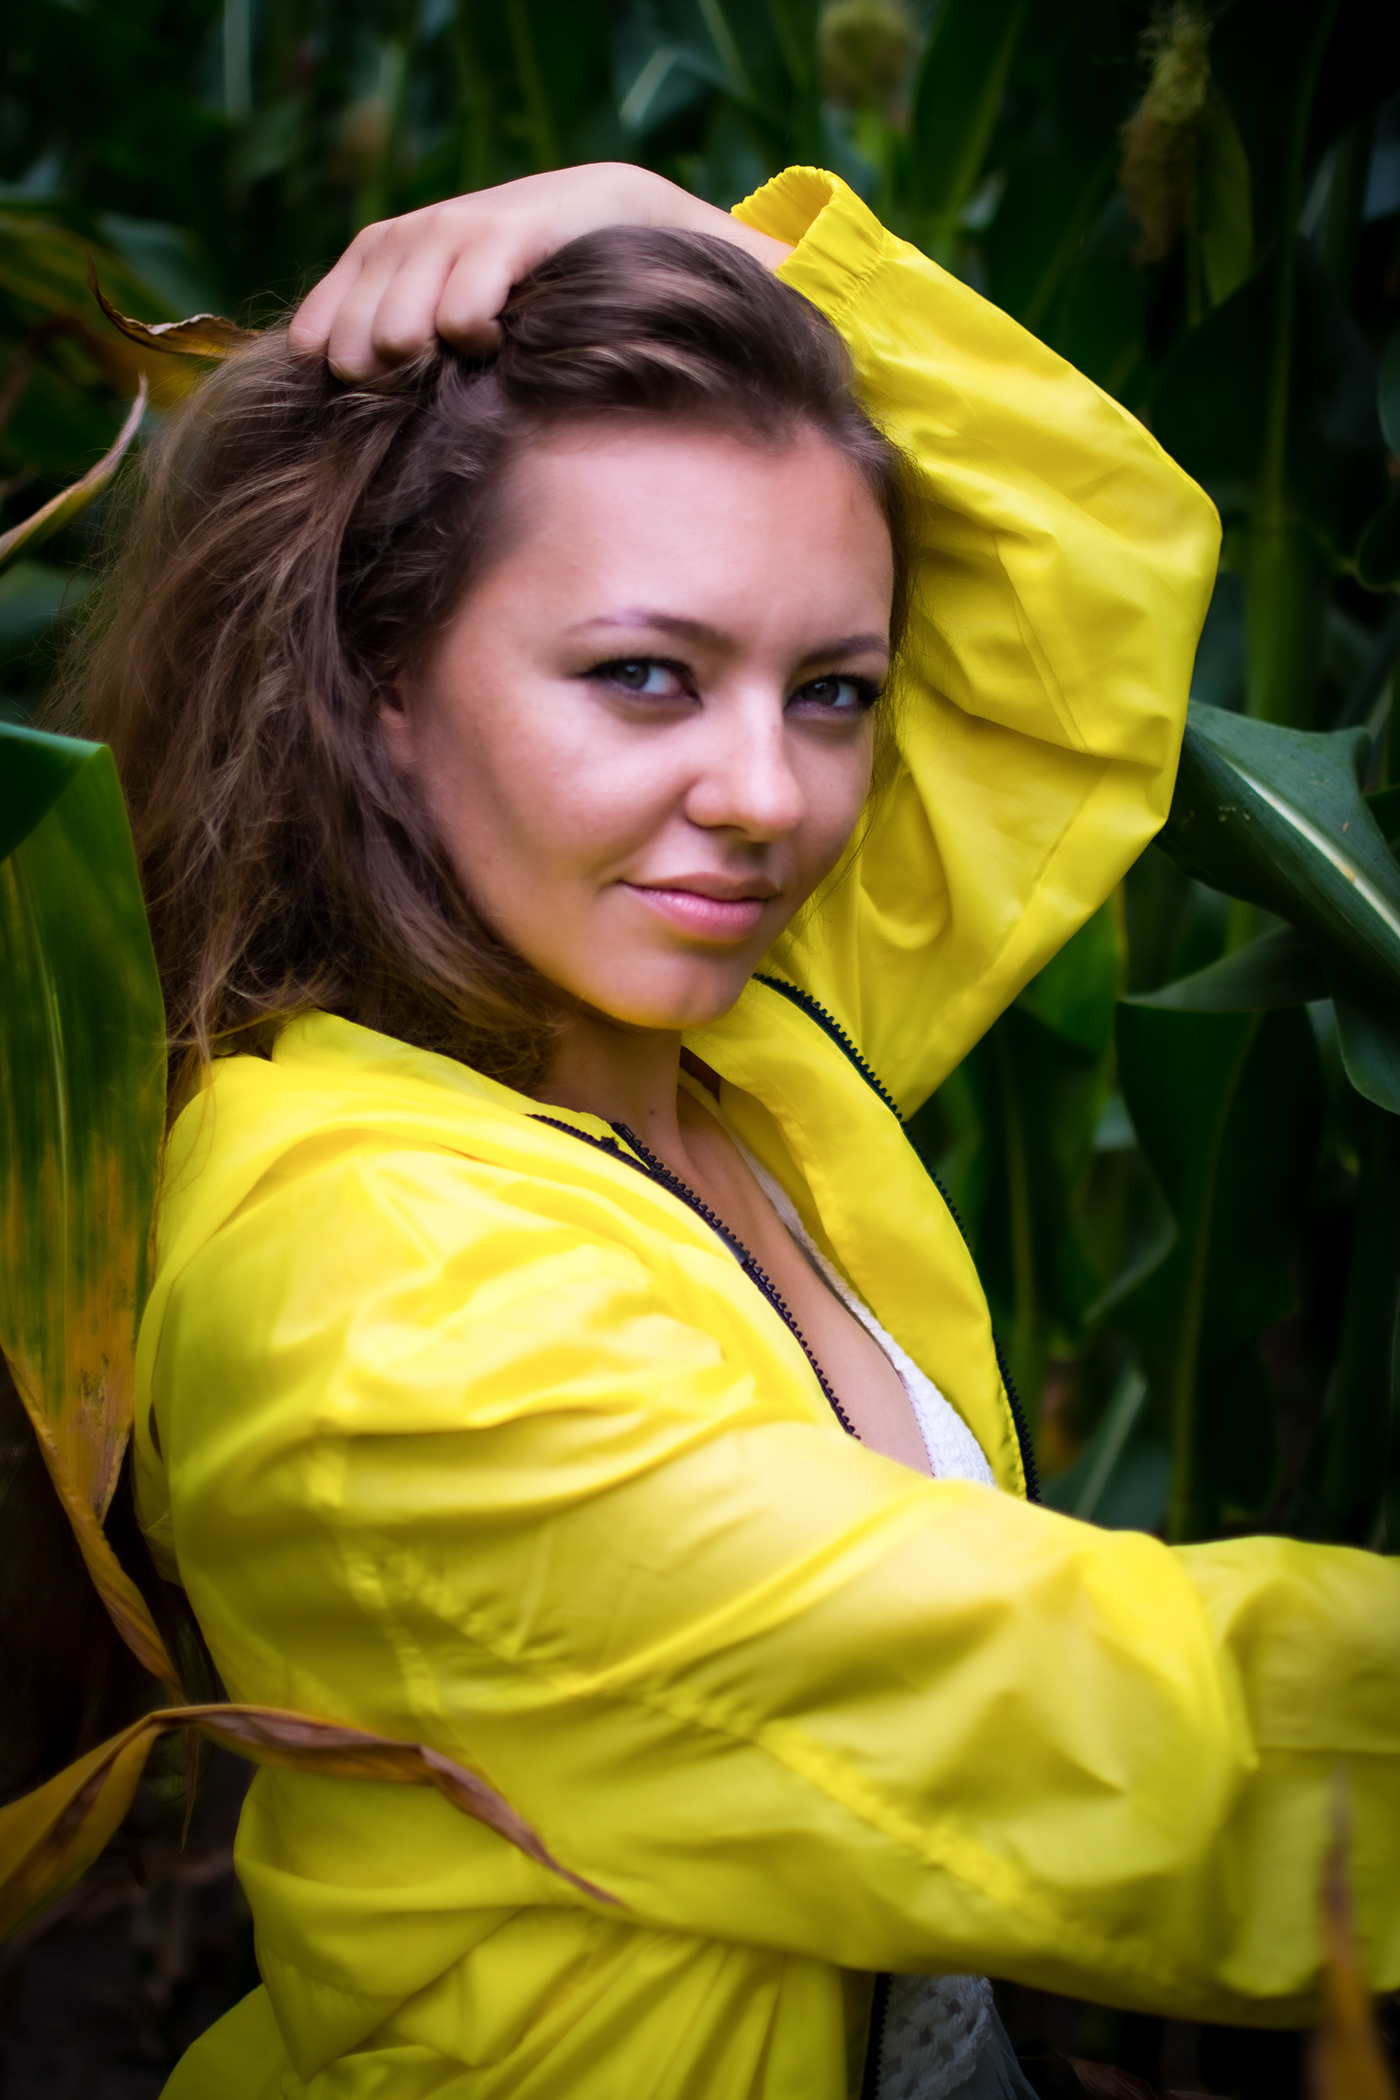 #Portrait #girl #yellow #jacket #Corn